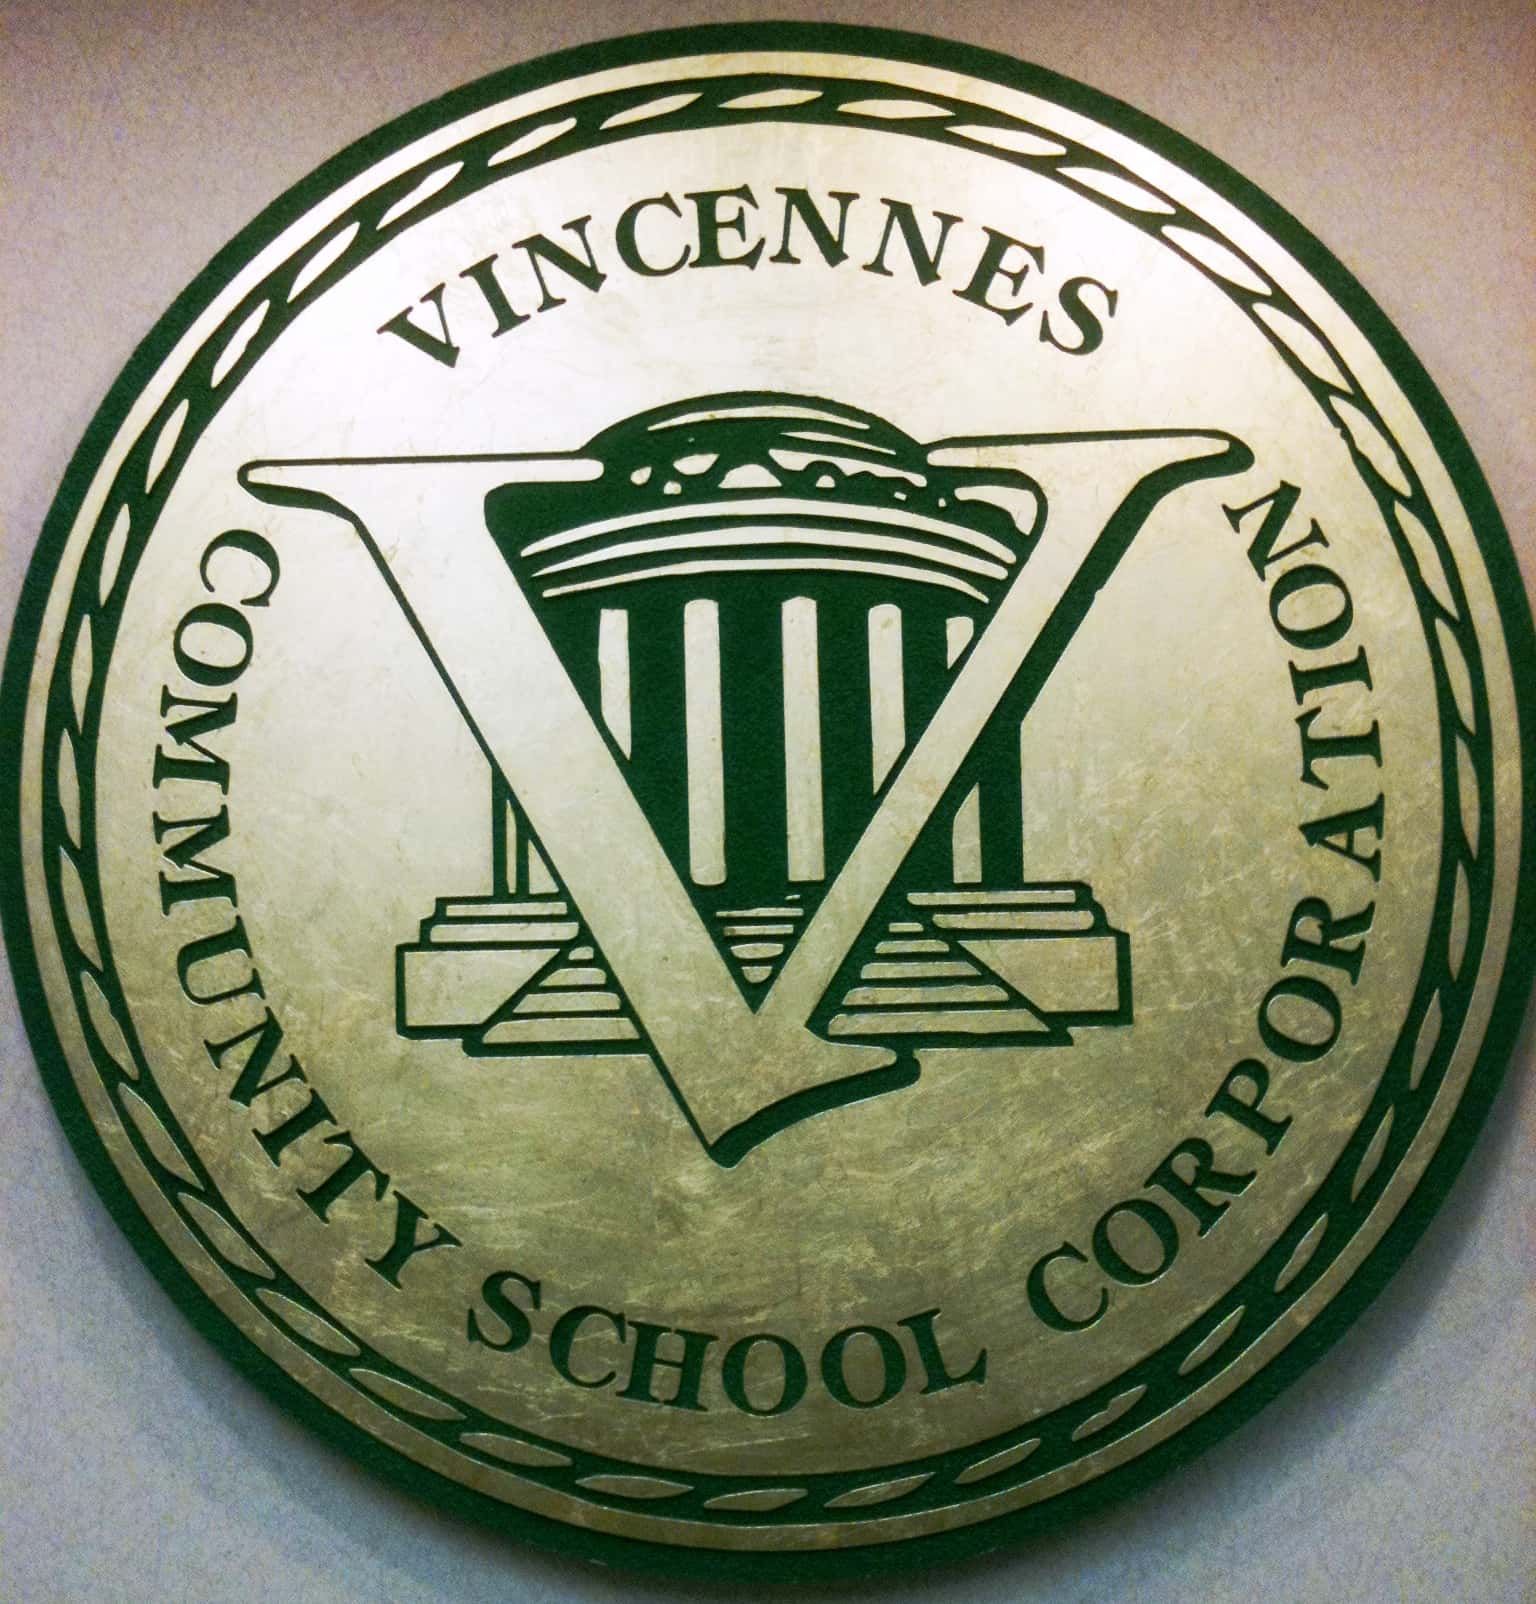 vcsc-vincennes-vcsc-2-jpg-192